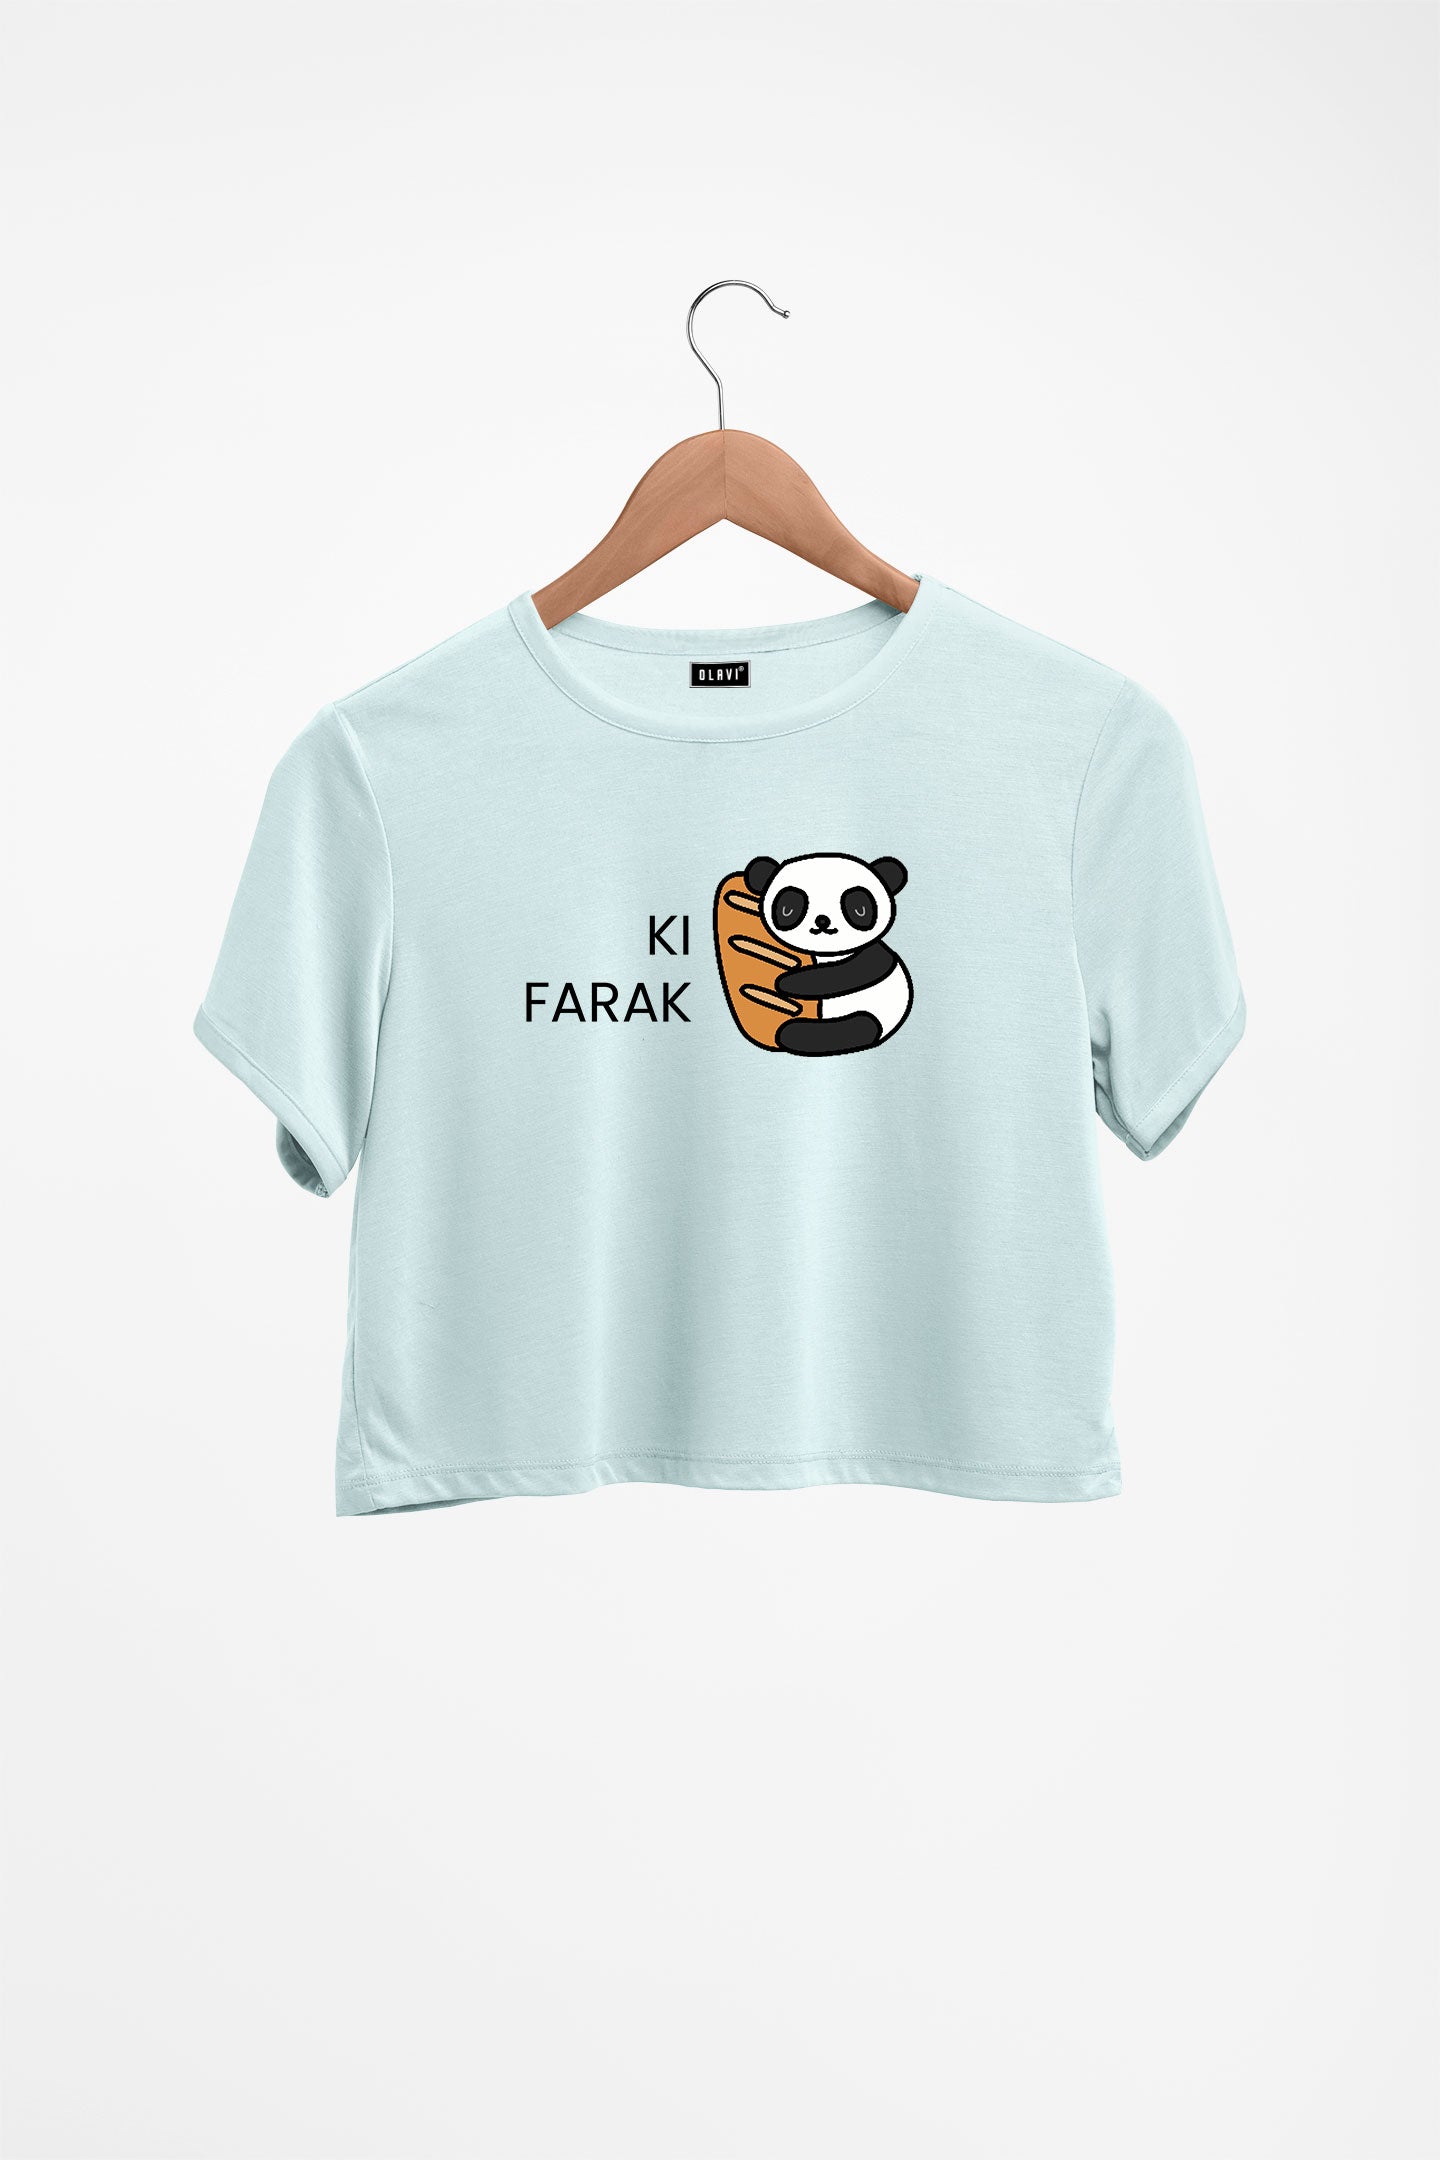 Ki Farak Panda Printed Crop Top